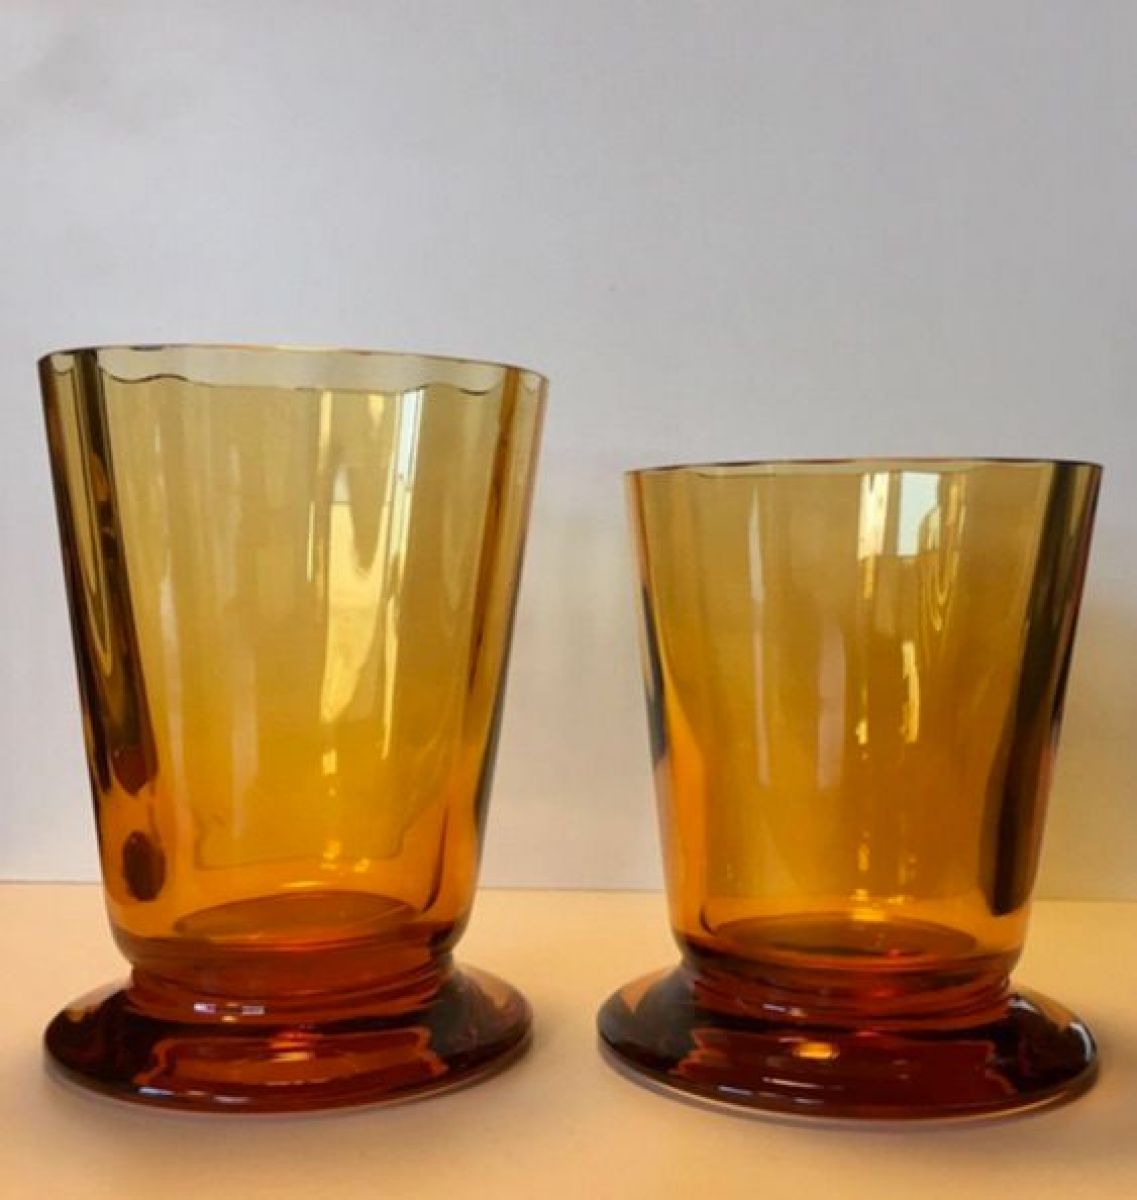 Tre bicchieri da acqua  Roberto  Baciocchi pic-1